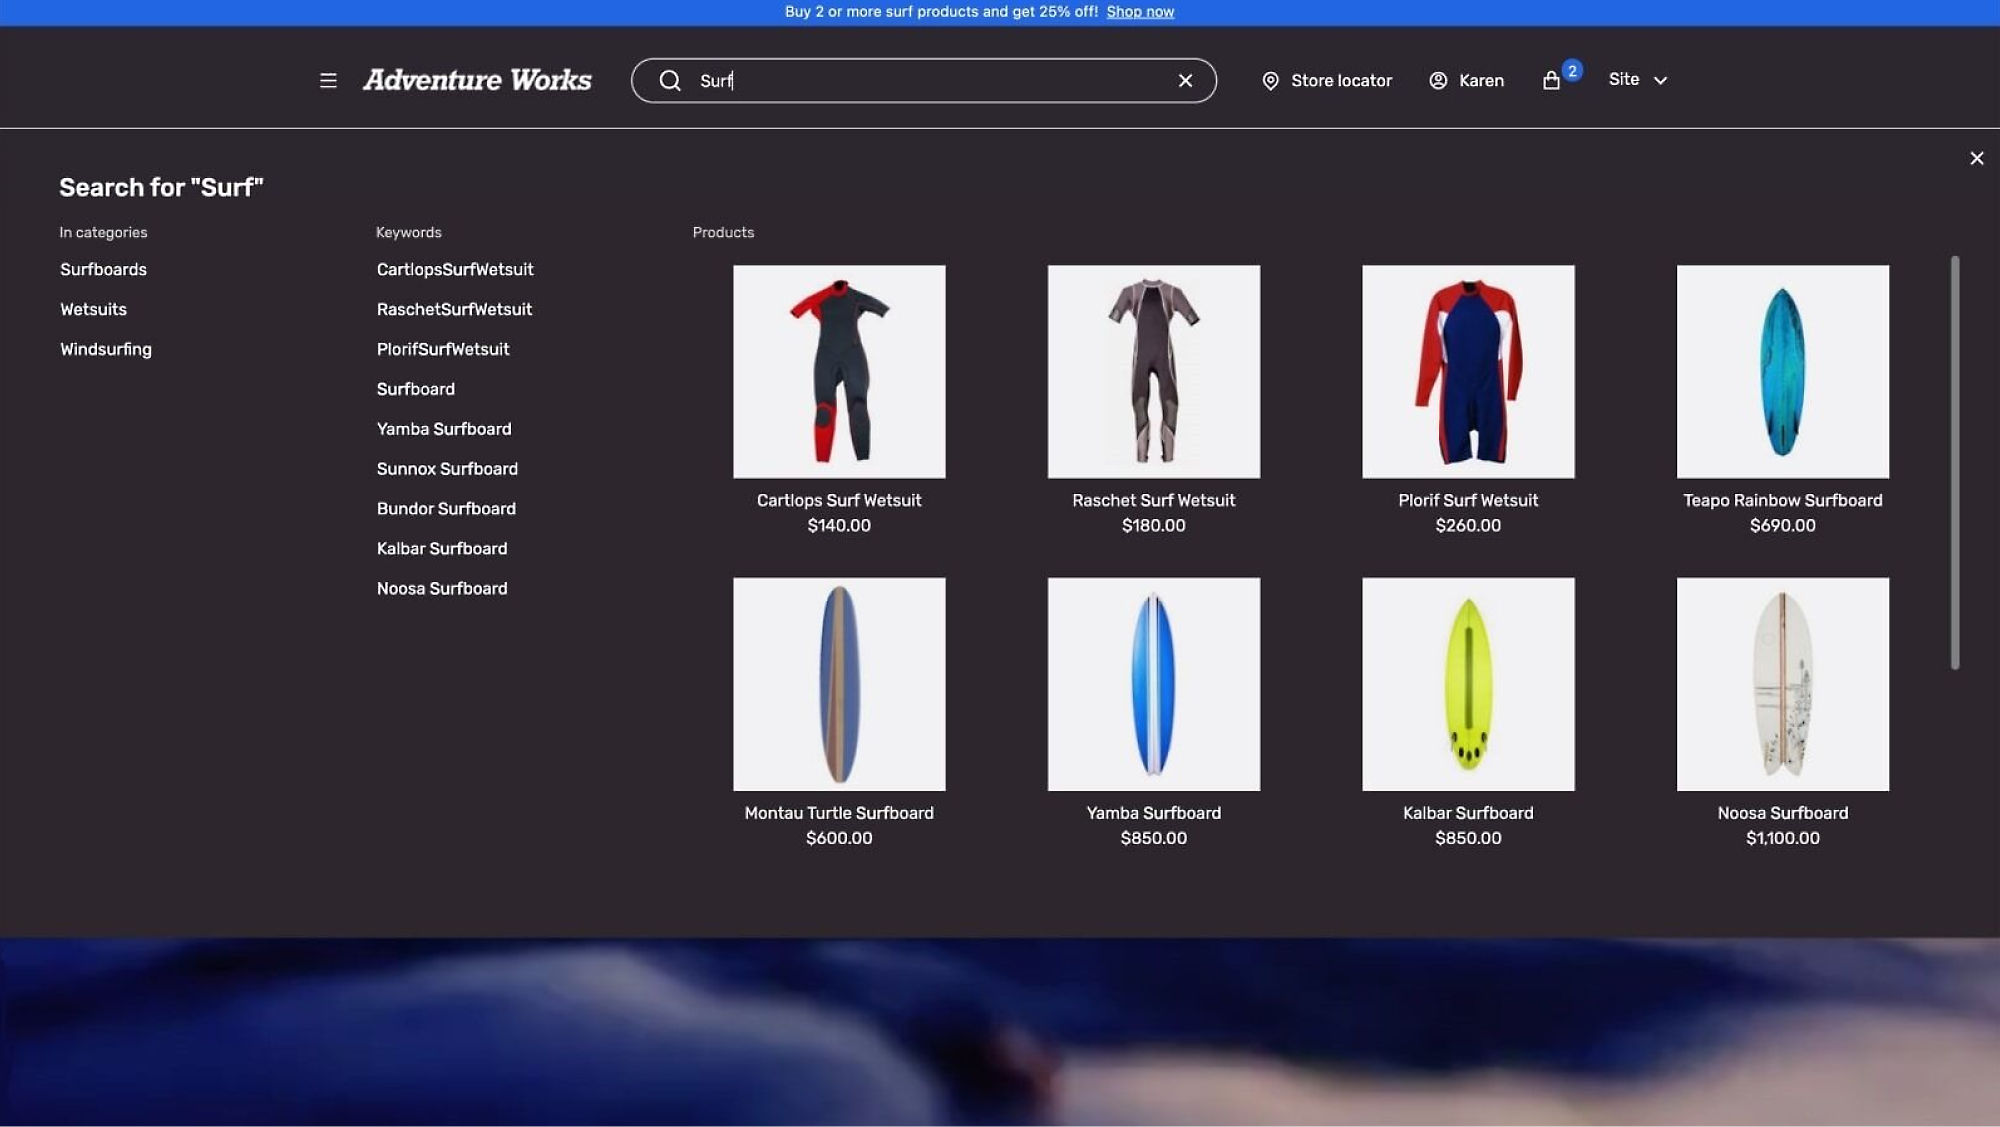 Promoción: Compra más de 2 productos de surf y obtén un 25 % de descuento.Los productos incluyen tablas de surf y trajes de neopreno.Precios enumerados.